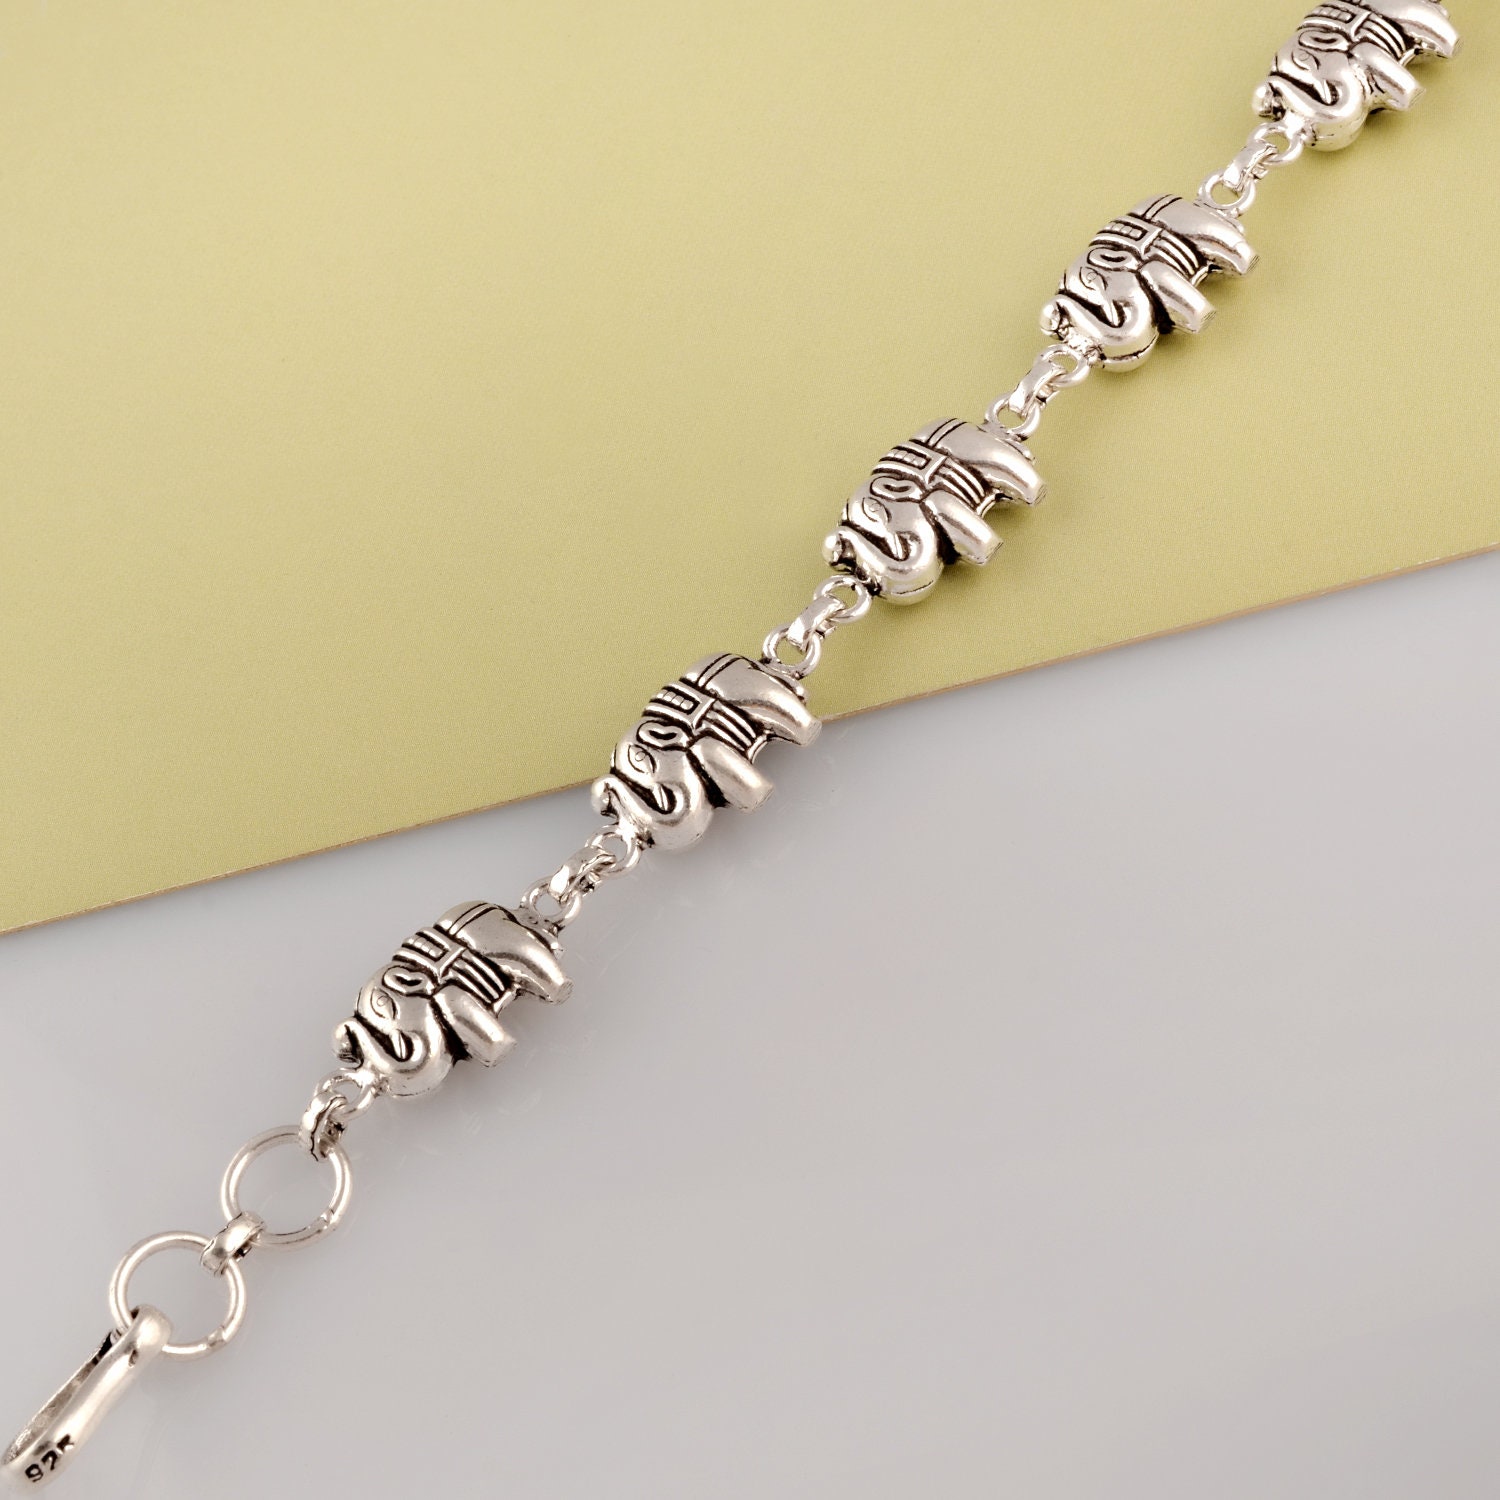 #034;Elephant" Charm for Snake Chain Charm Bracelets